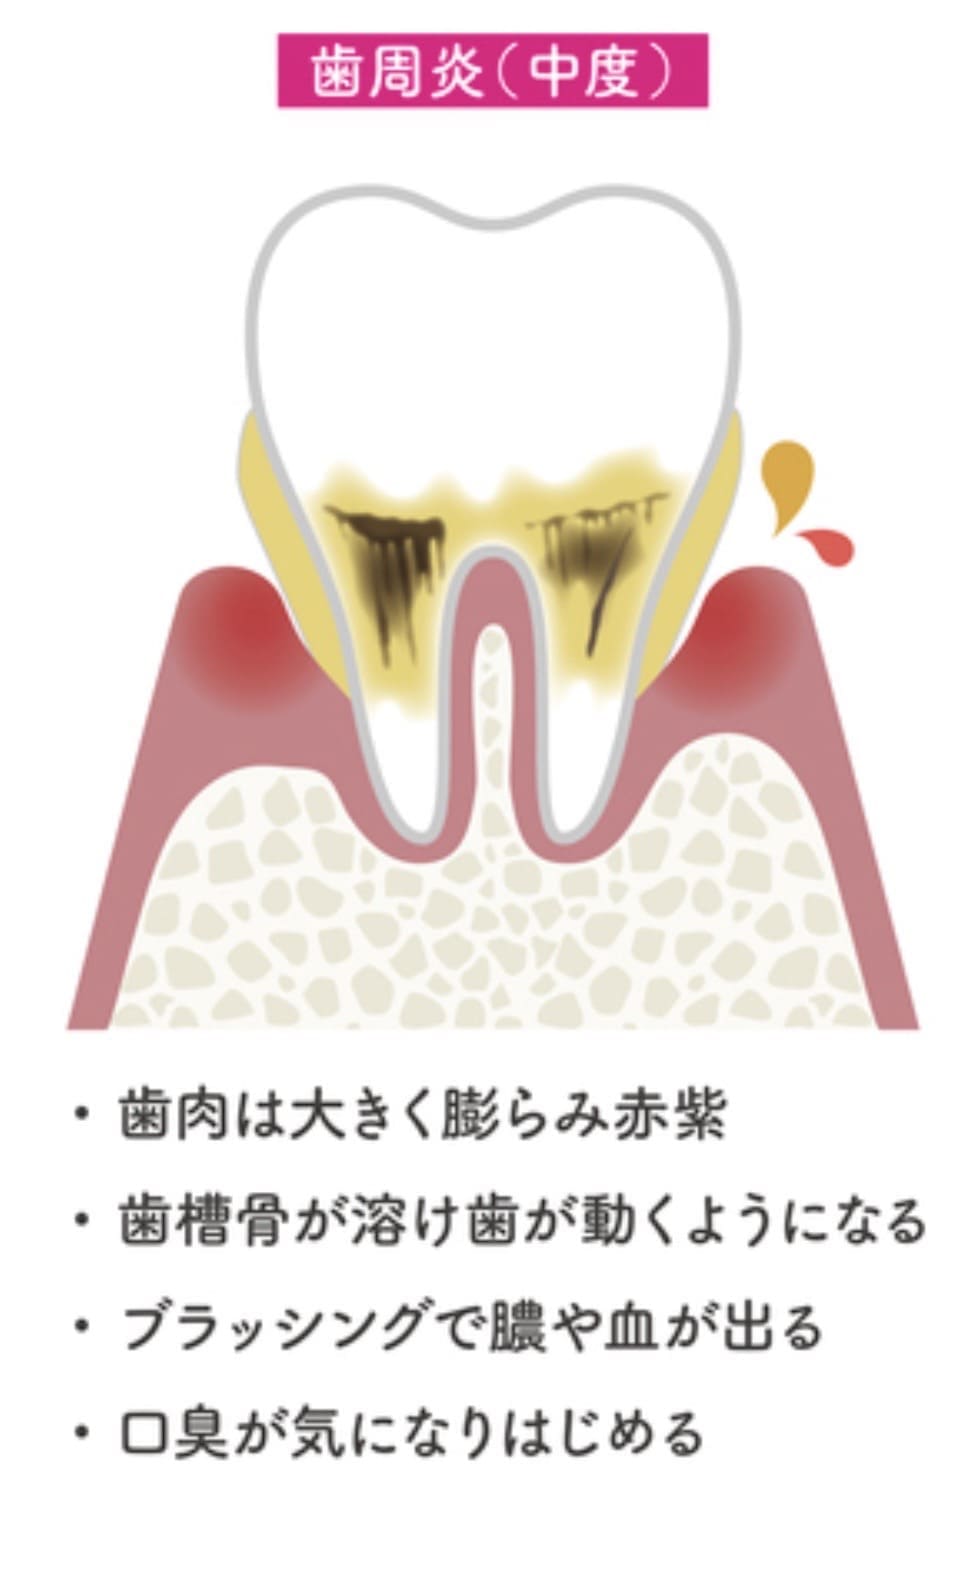 中等度の歯周病の解説画像